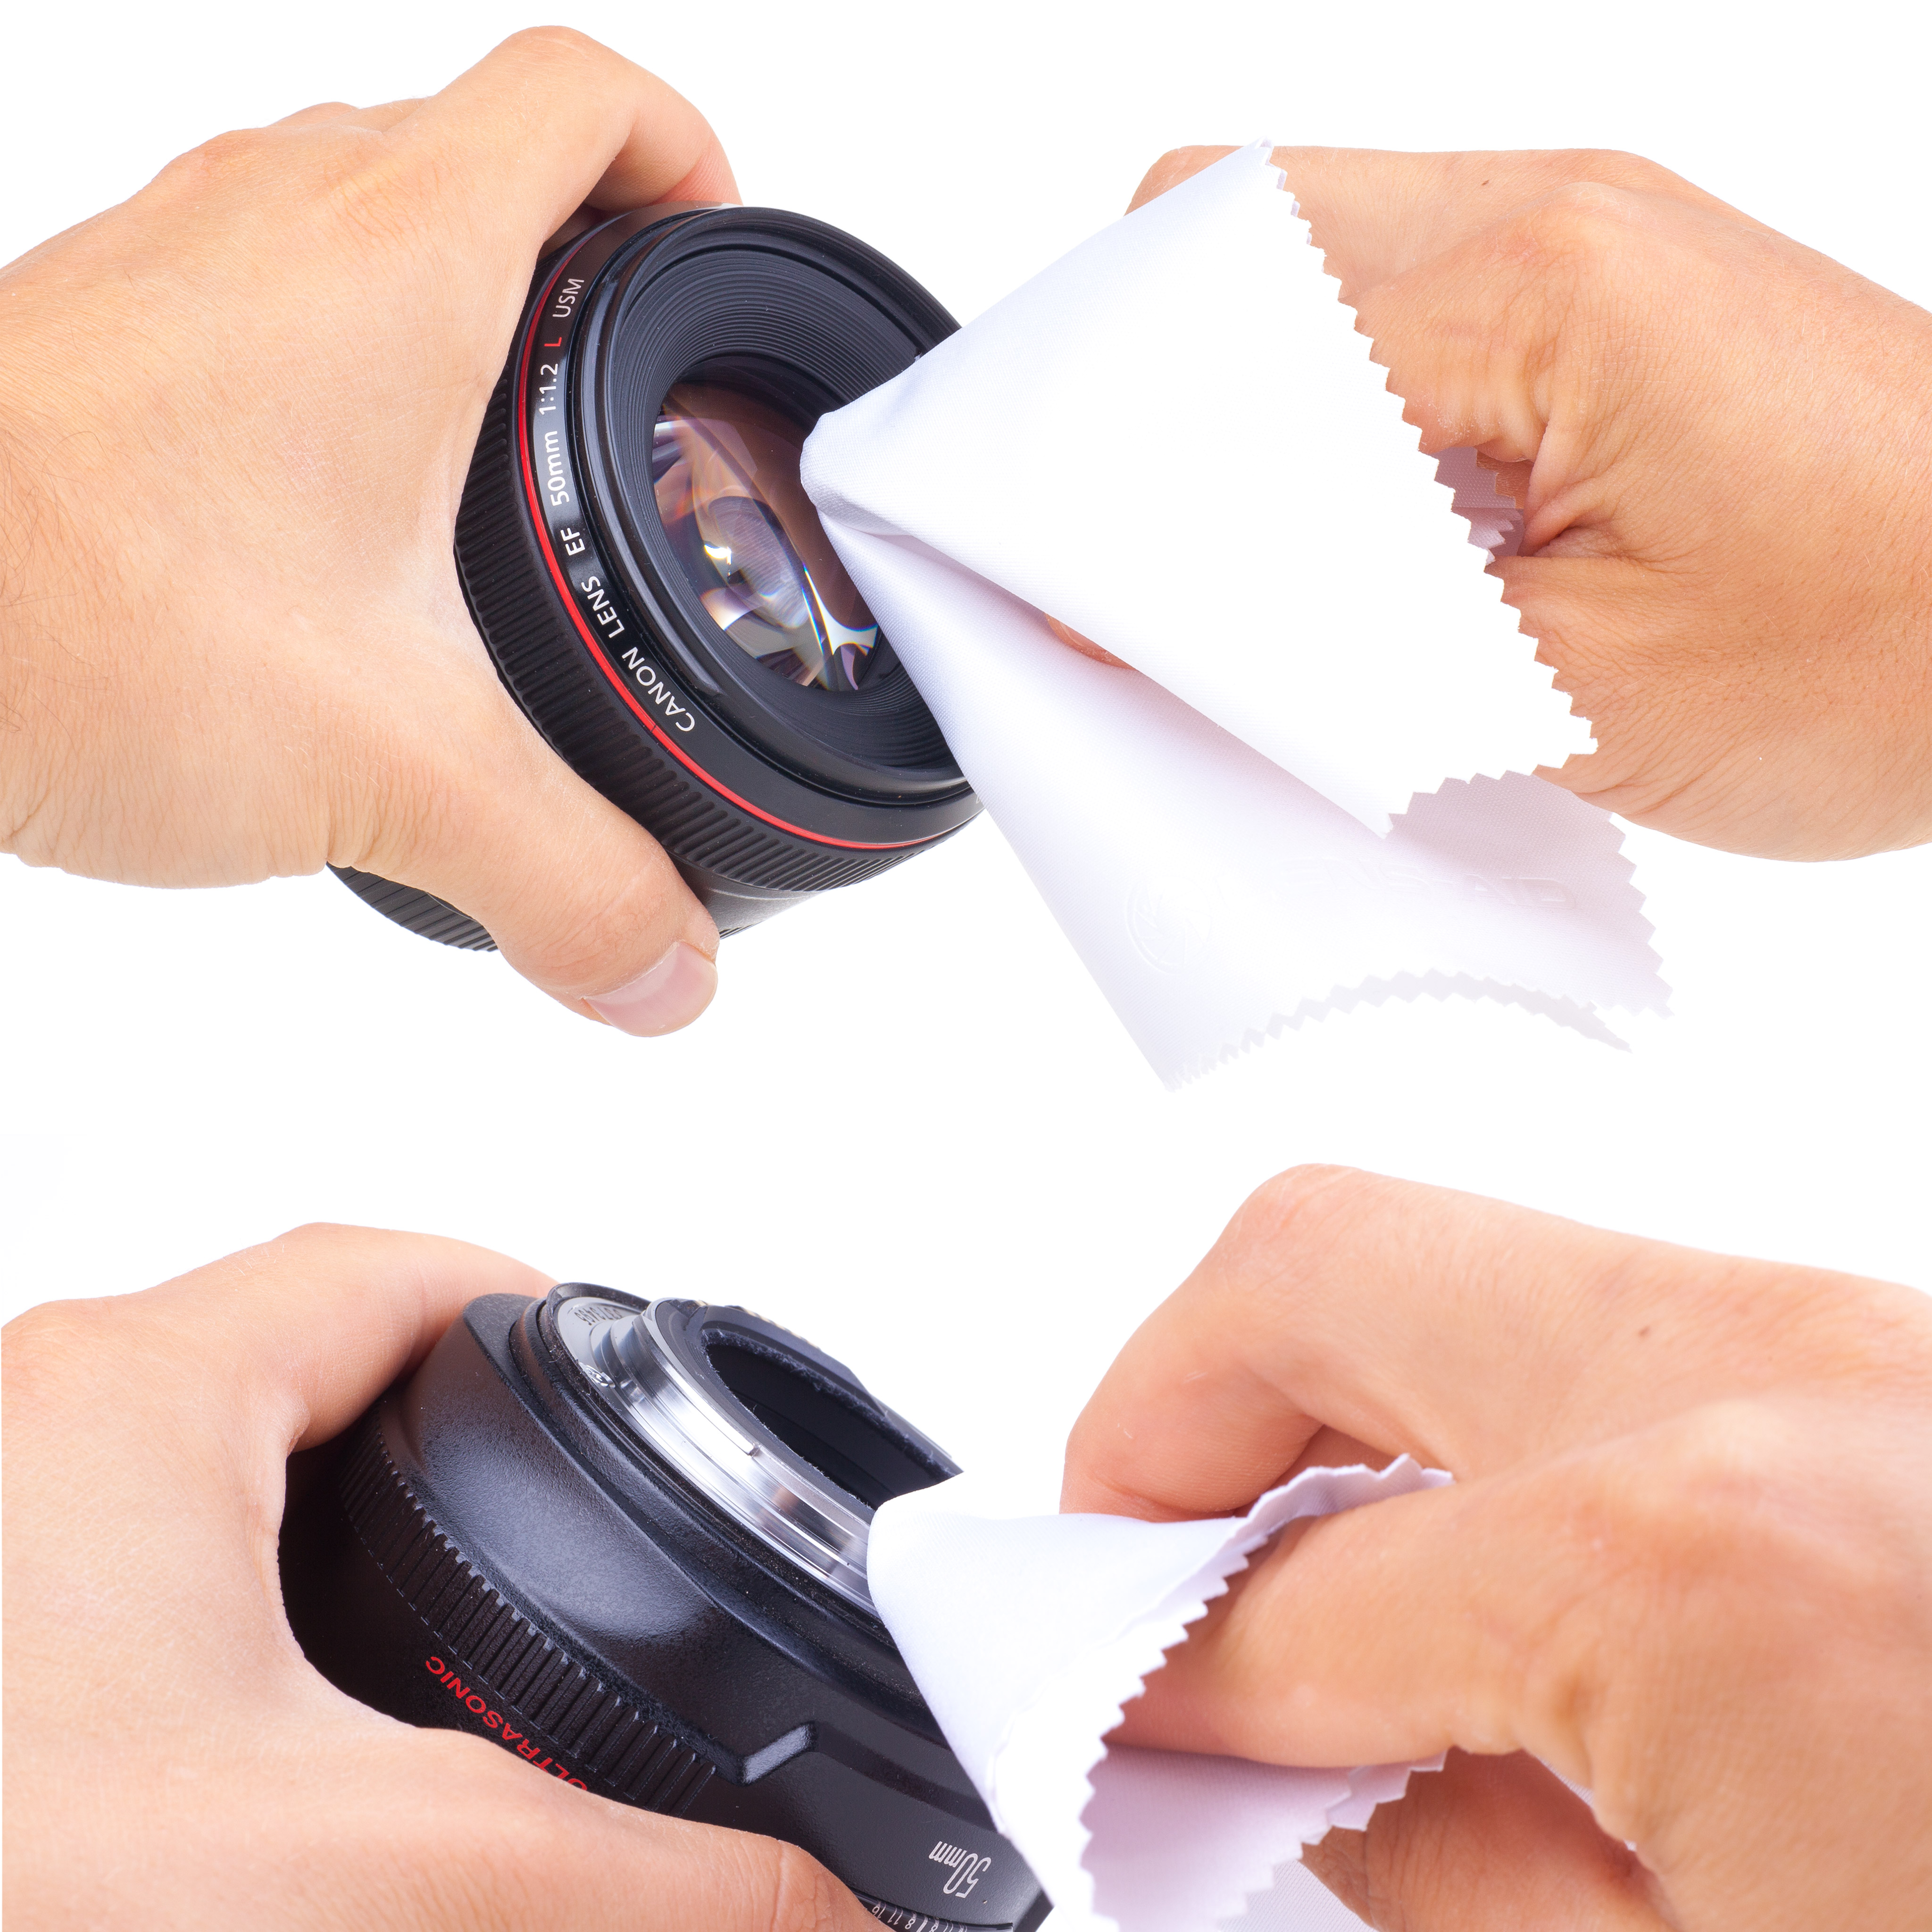 passend Objektiv, Reinigungstuch, für Brille Mikrofaser-Reinigungstücher, Set LENS-AID & Blau/Weiß, Smartphone 10er